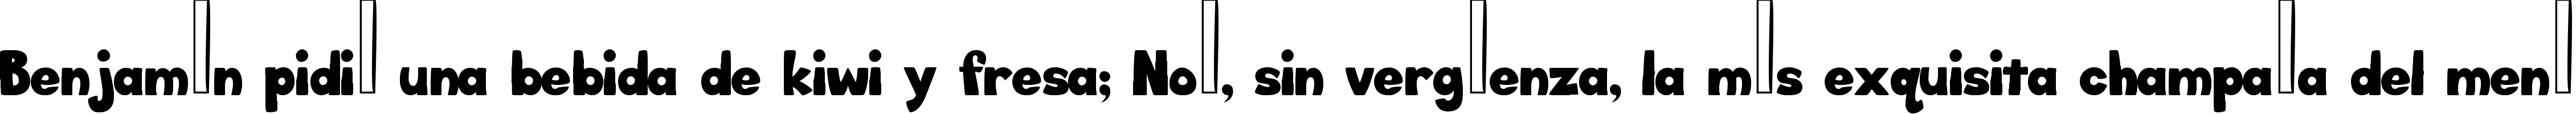 Пример написания шрифтом Big_Bottom_Typeface_Normal текста на испанском